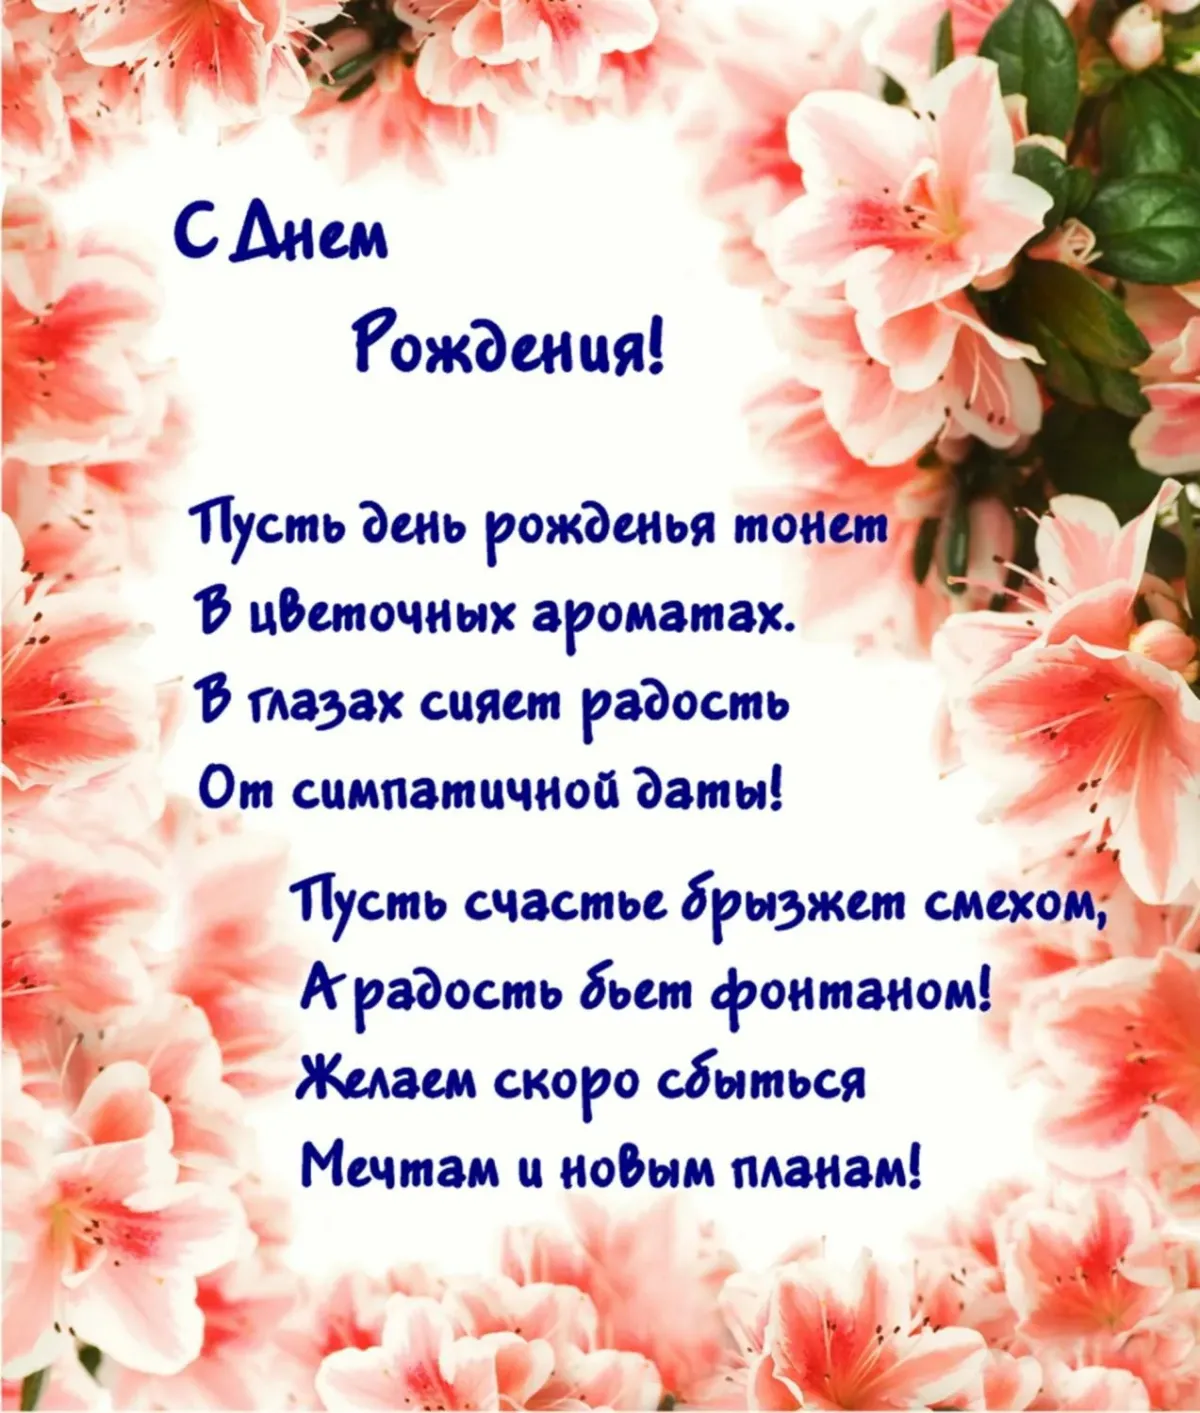 Поздравить с днем рождения на украинском. С днем рождения. Поздравления с днём рождения. Текст поздравления с днем рождения. Стихотворение на день рождения.